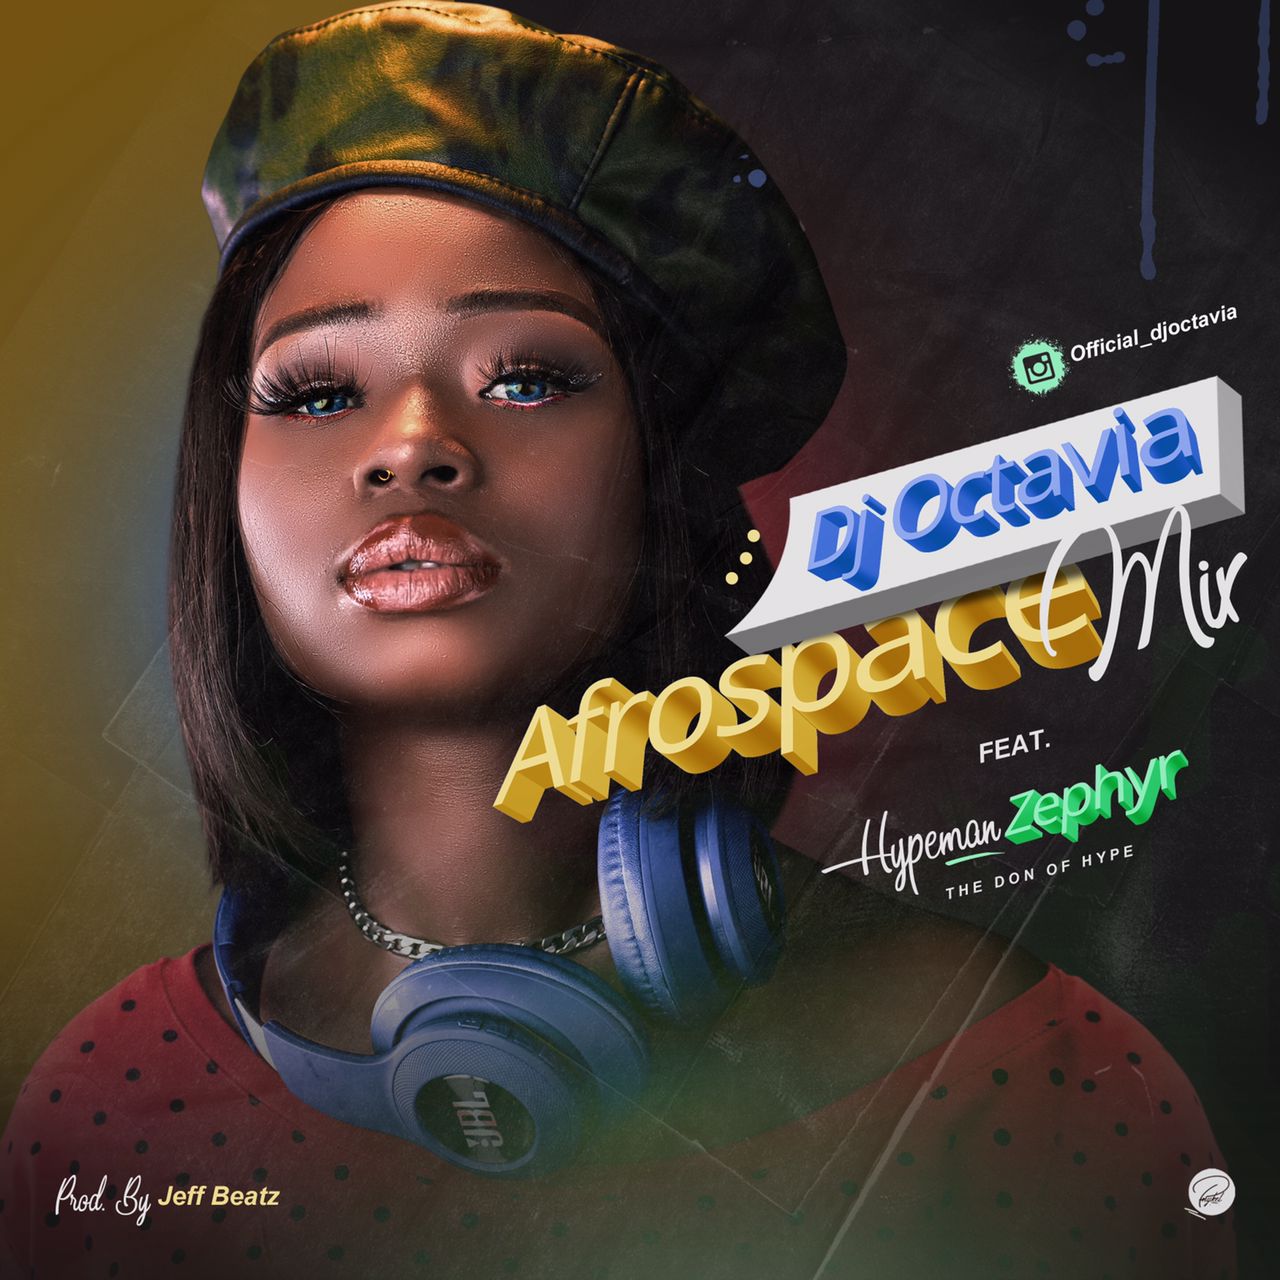 Dj Octavia - Afrospace Mix Feat. Hypeman Zephyr 19